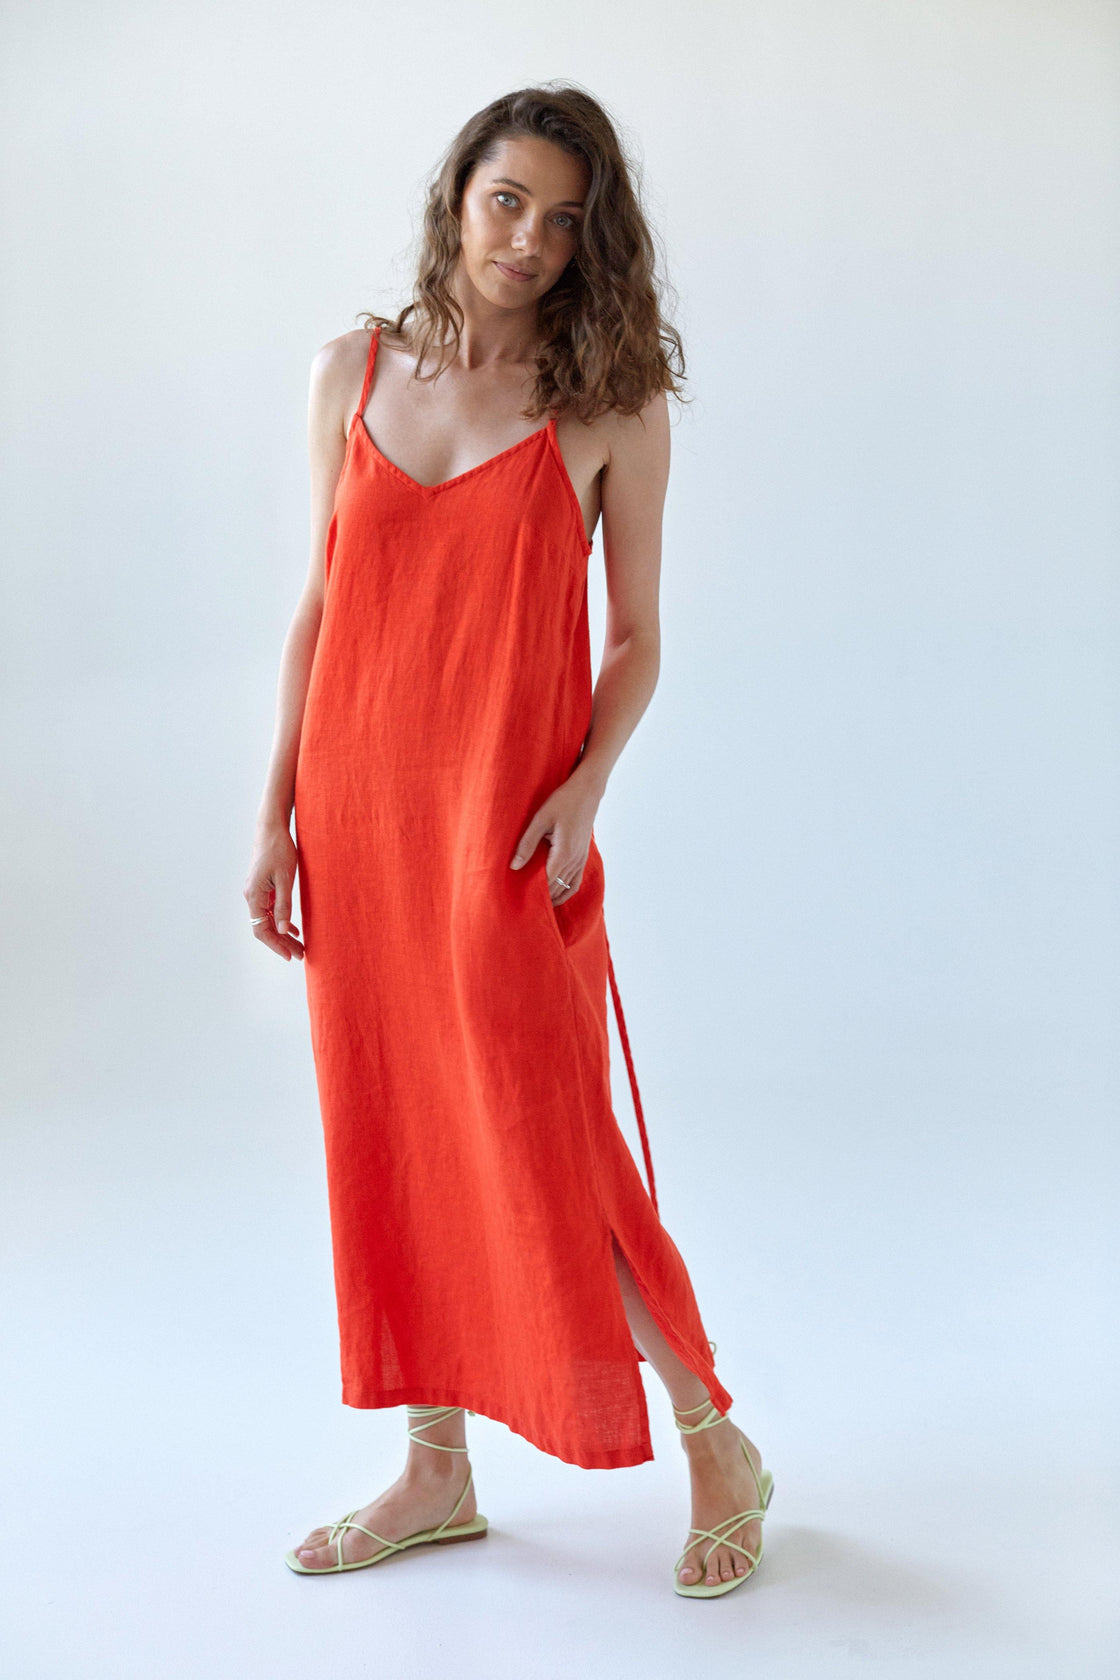 Orange Slip Dress